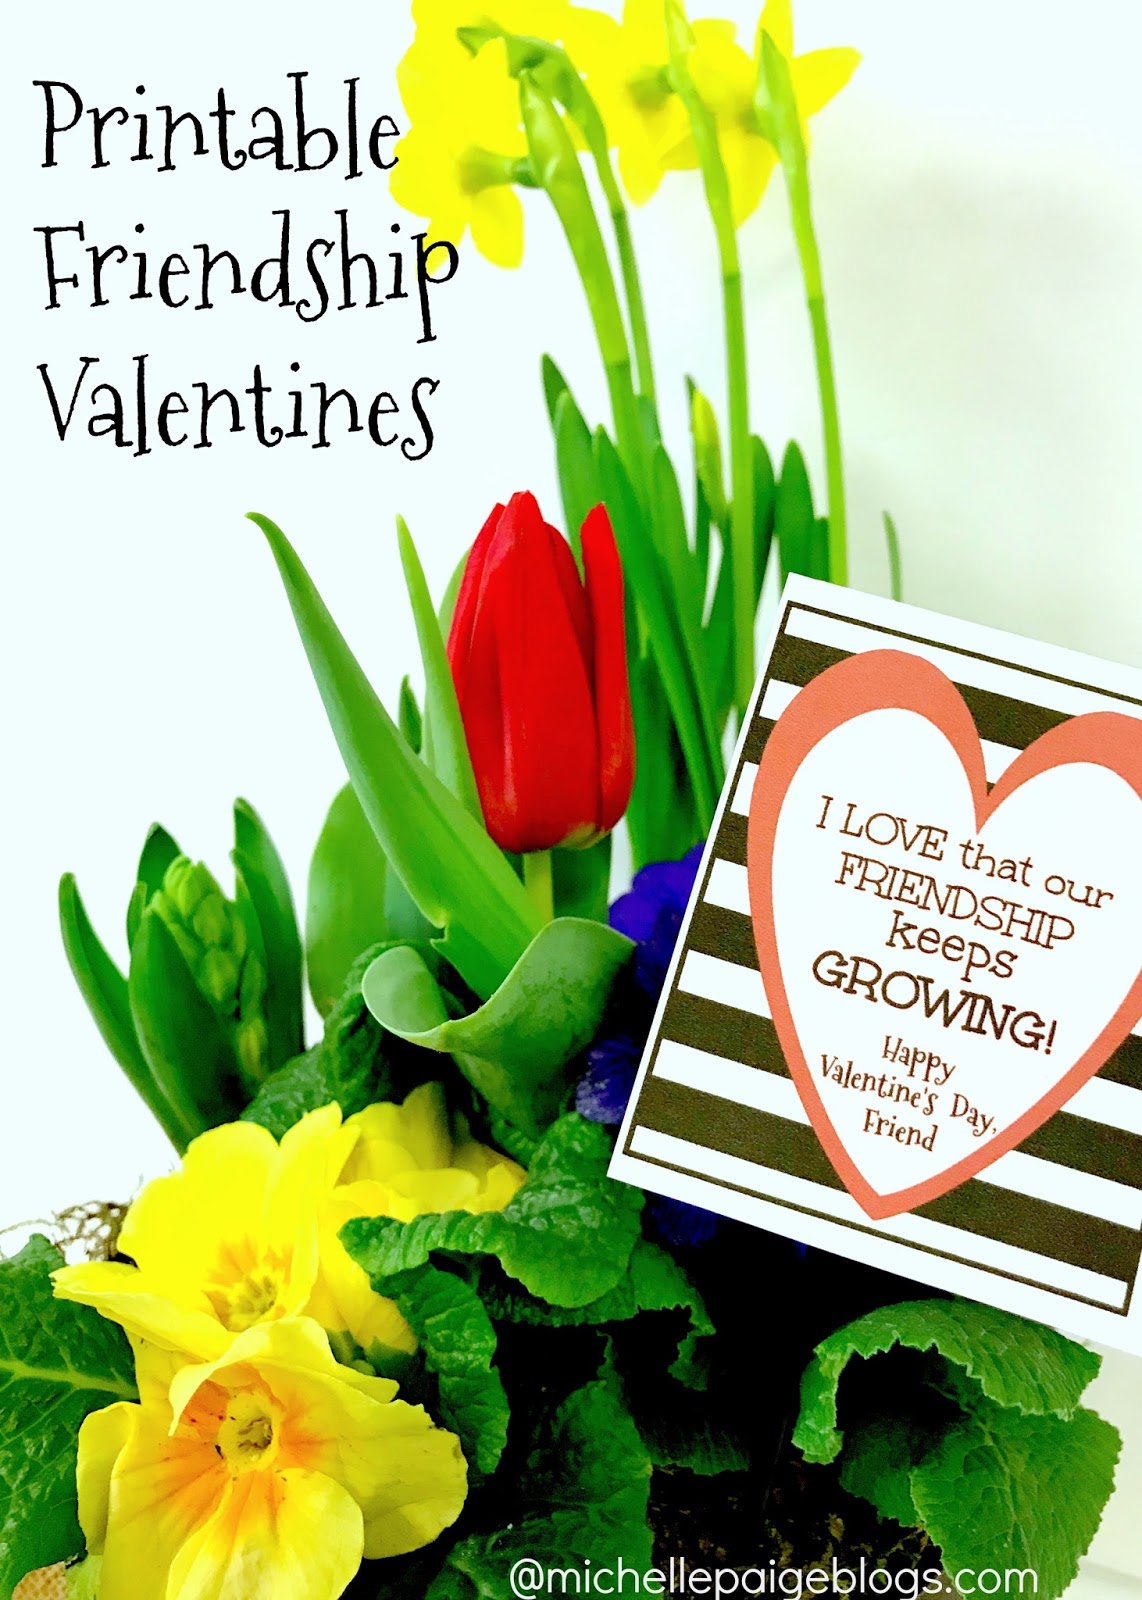 michelle-paige-blogs-printable-friendship-valentines